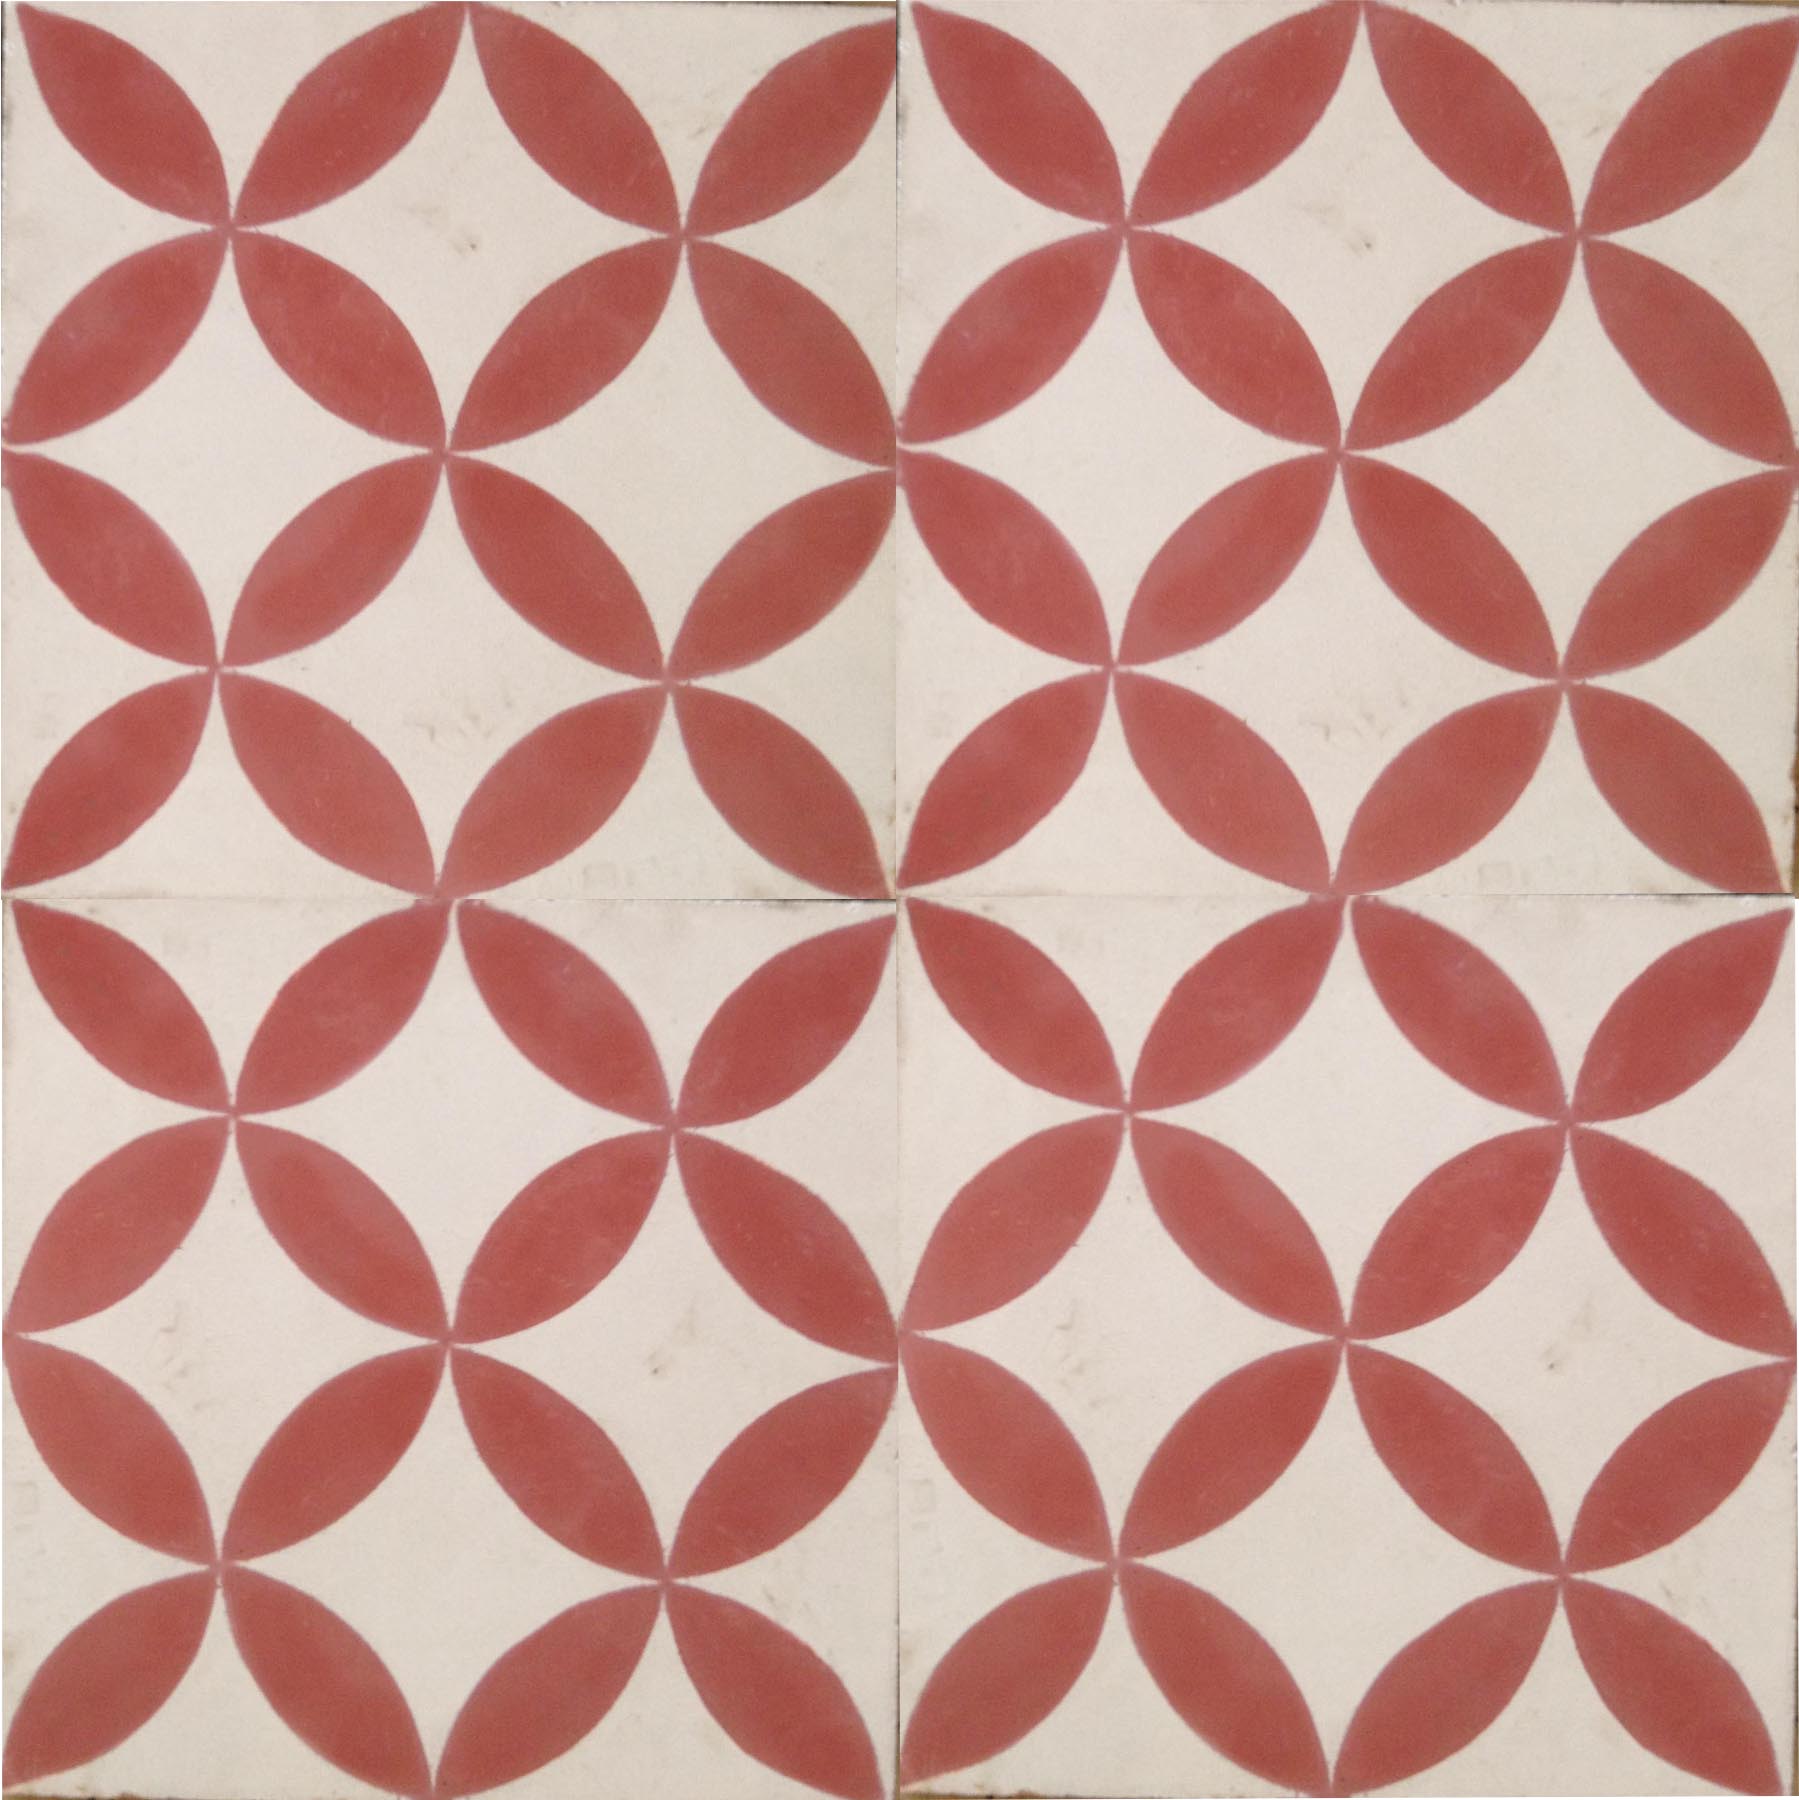 Petals Red Encaustic Tile 20cm*20cm*1.5cm